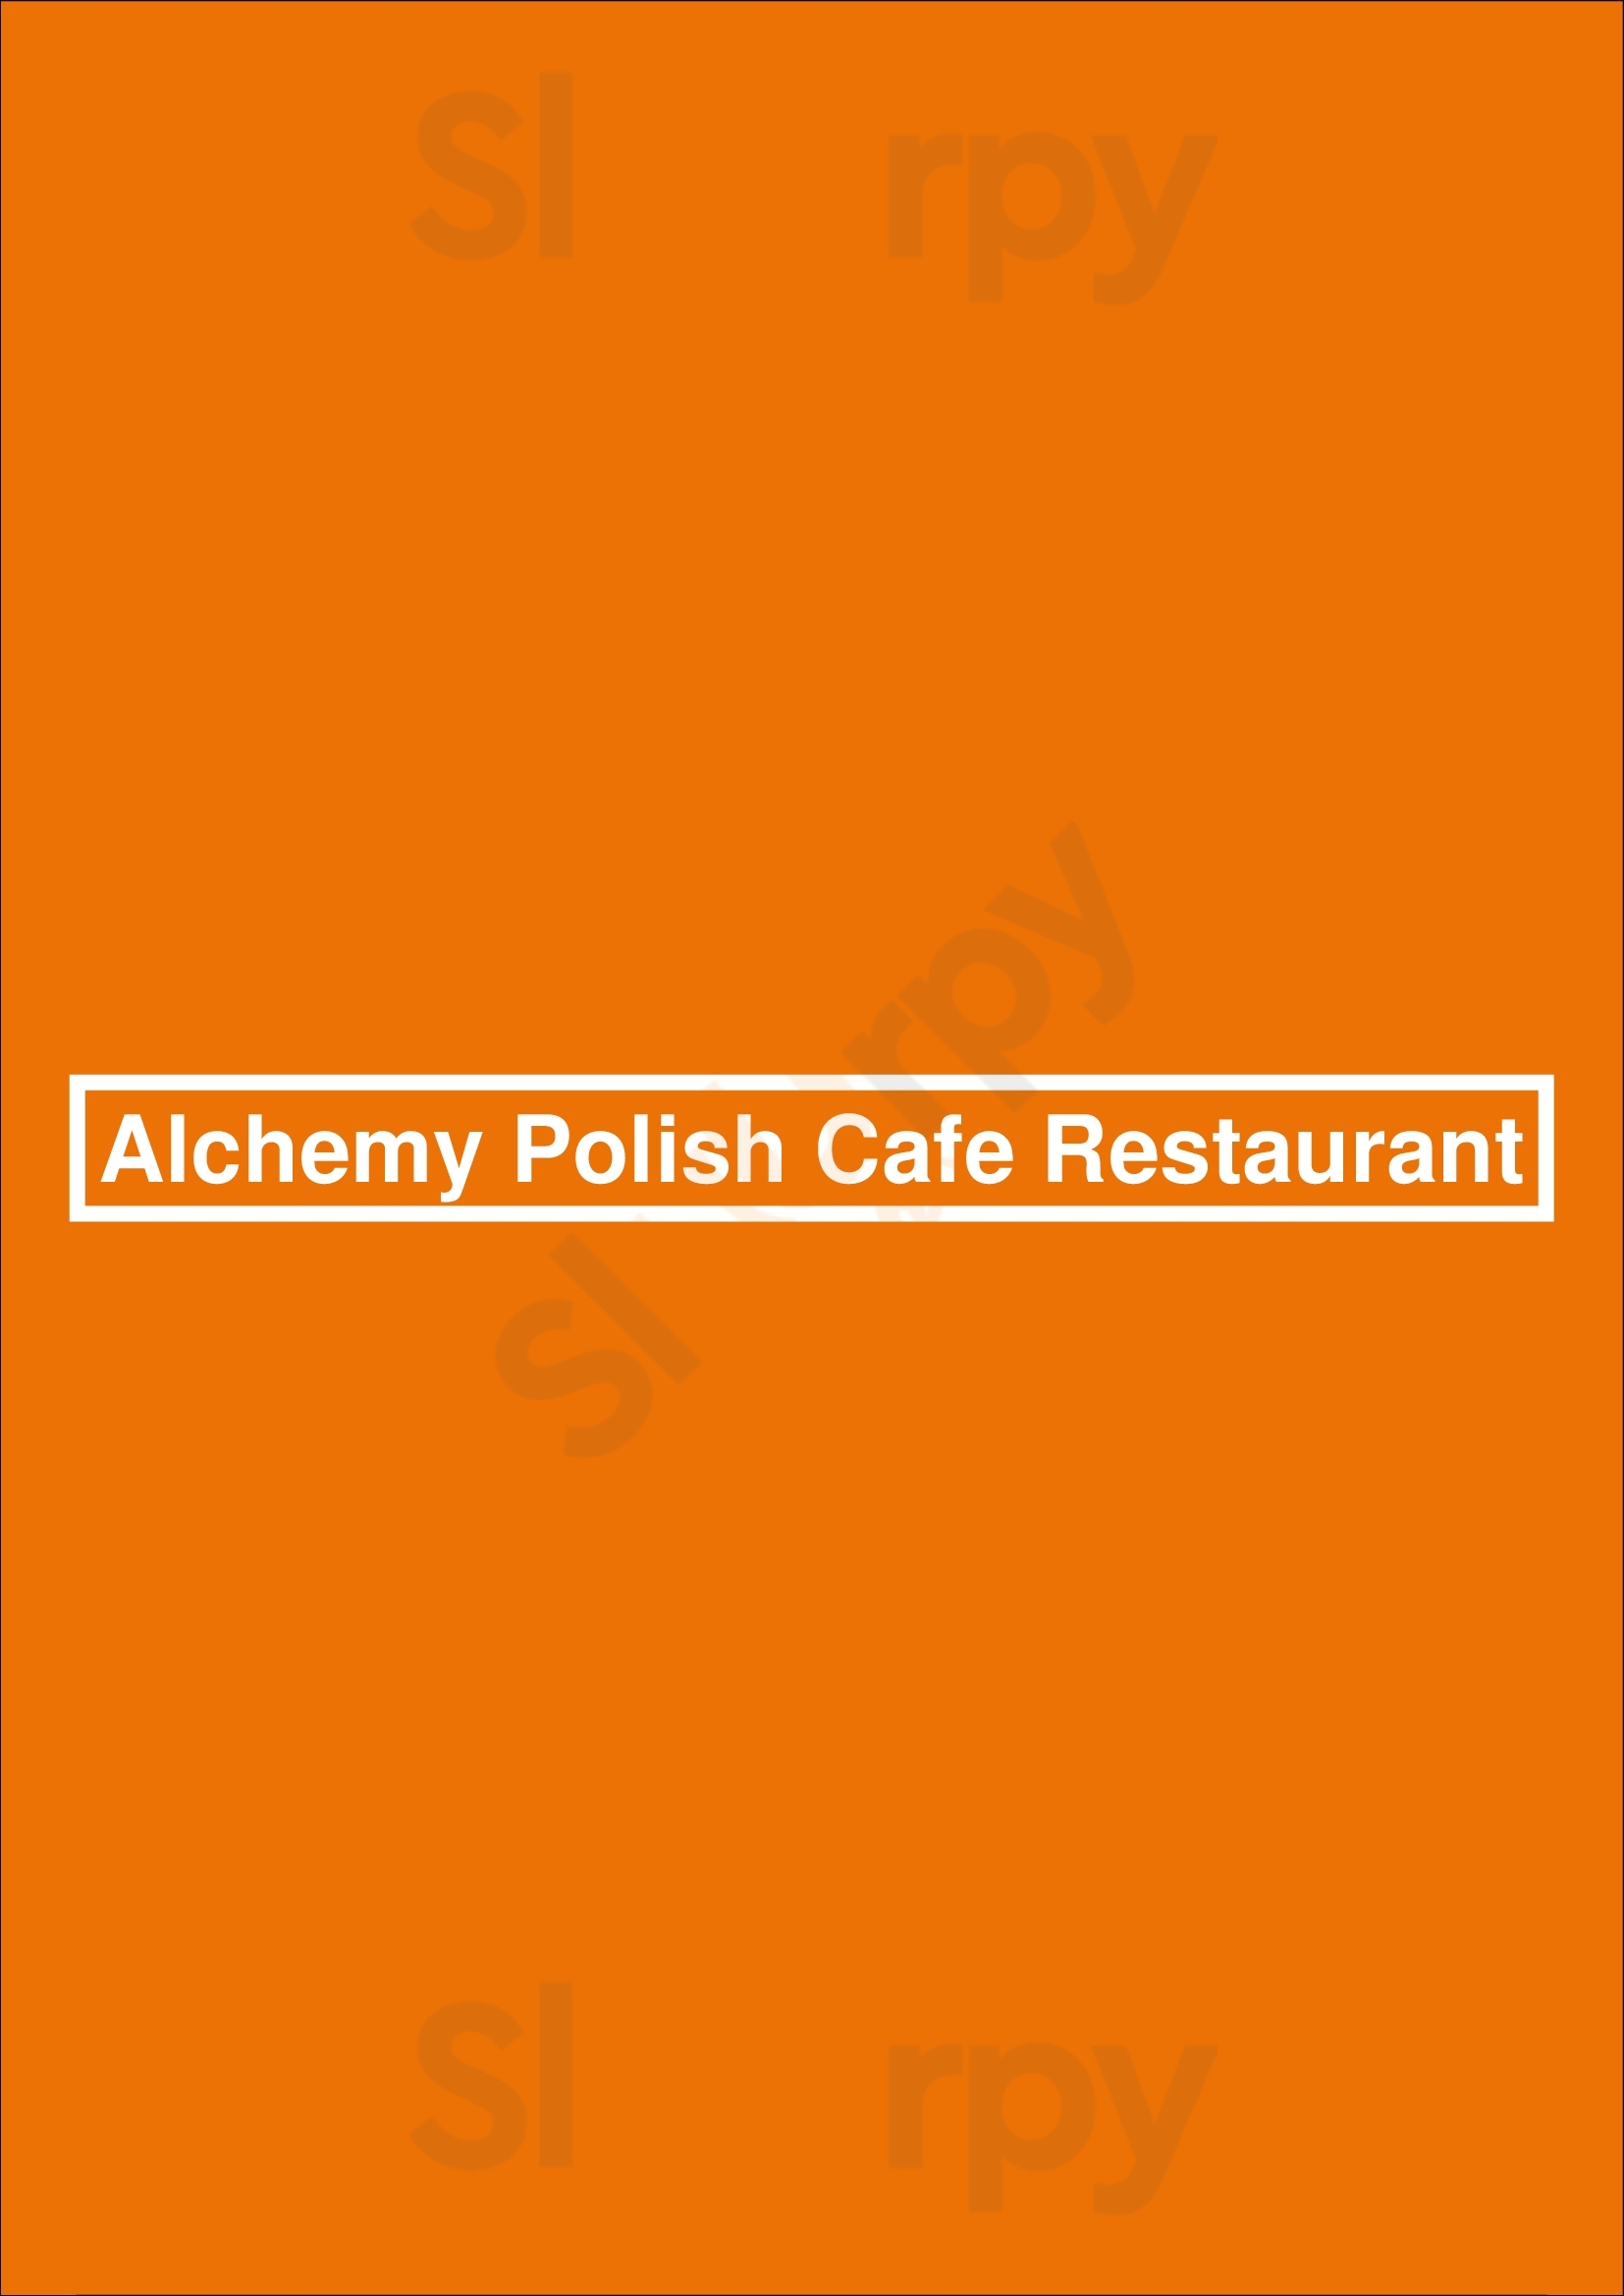 Alchemy Polish Cafe Restaurant Sydney Menu - 1